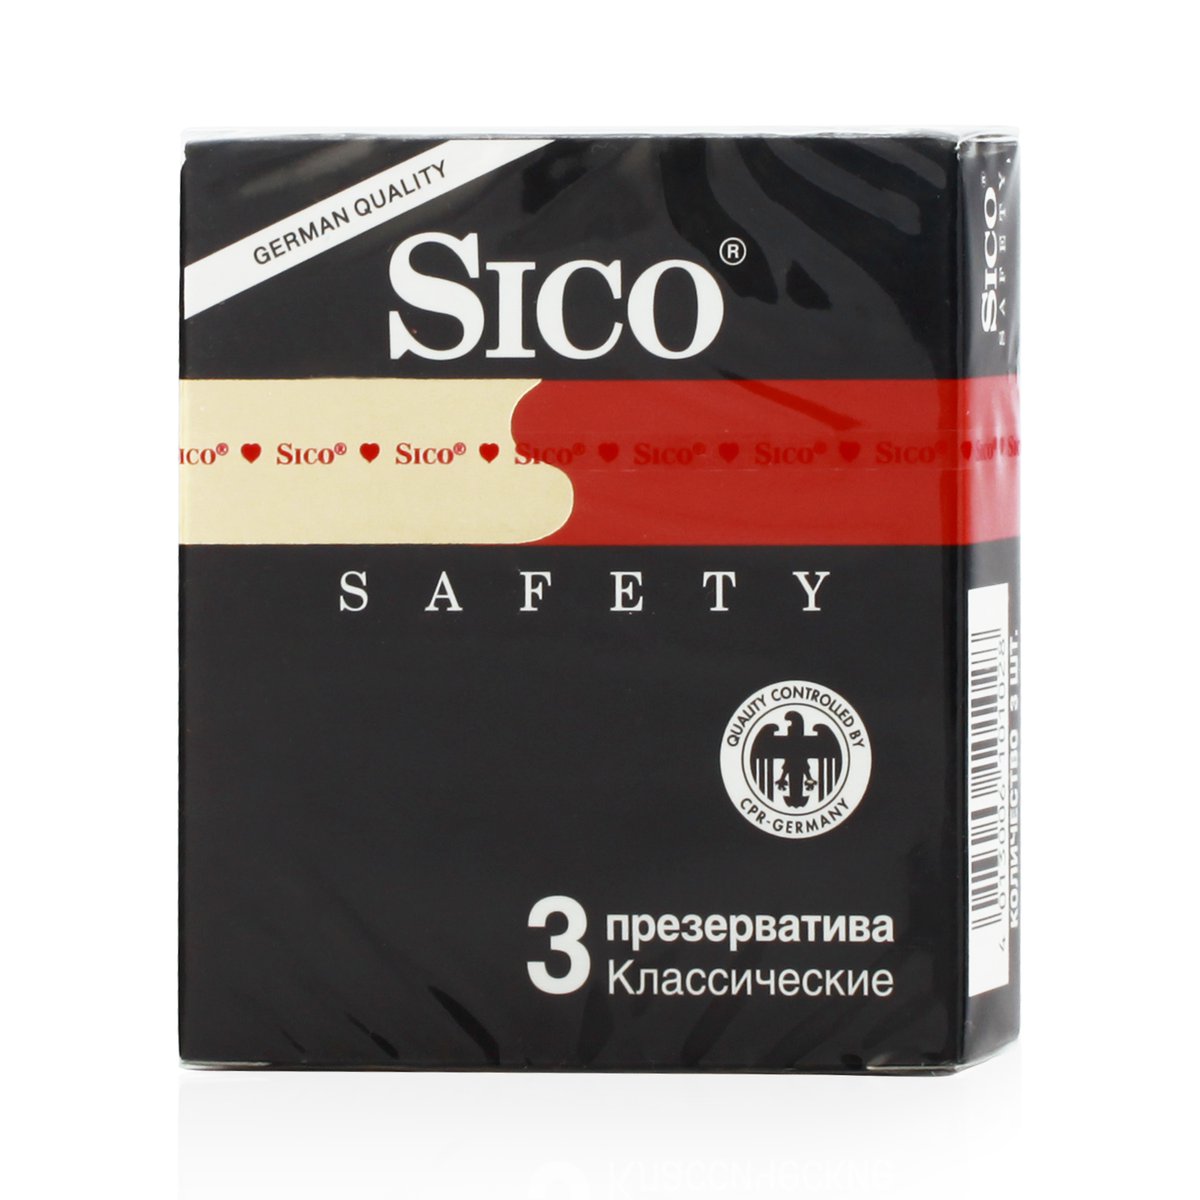 Сико презервативы надежные (презервативы, 3 шт) - цена, купить онлайн в Мос...